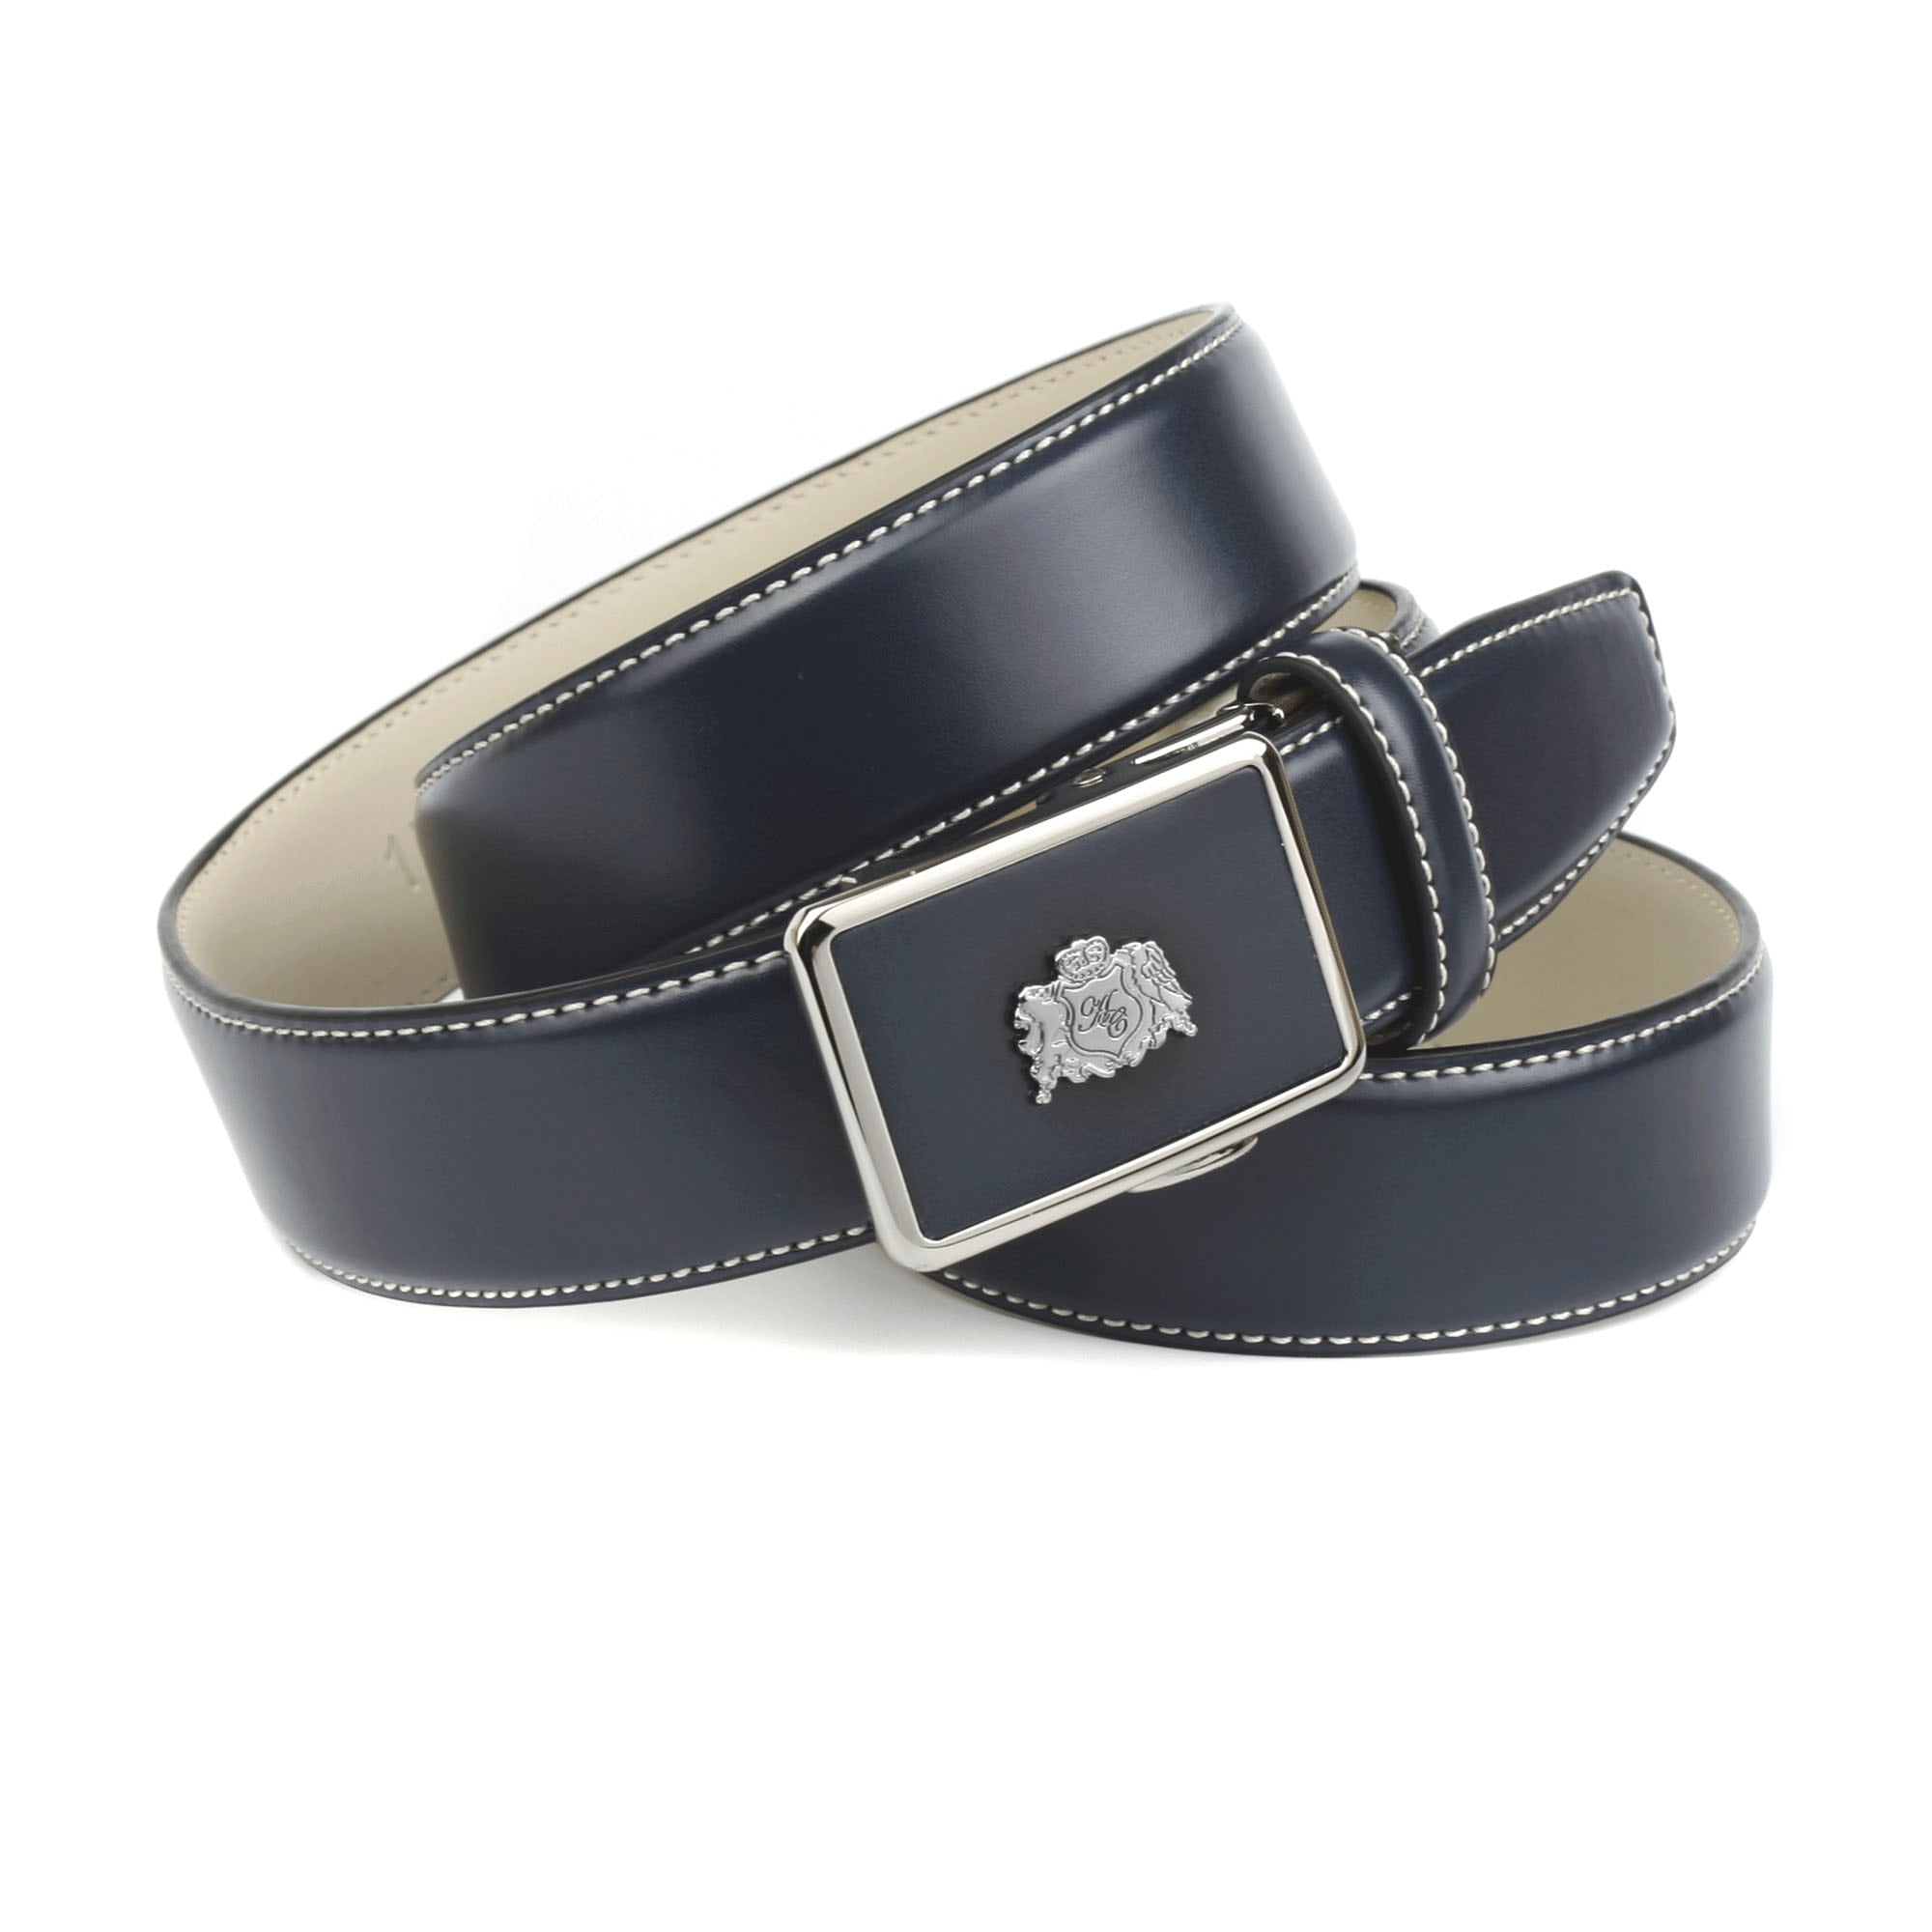 Anthoni Crown Ledergürtel, in dunkelblau mit Kontrast Stitching in weiß  online kaufen bei OTTO